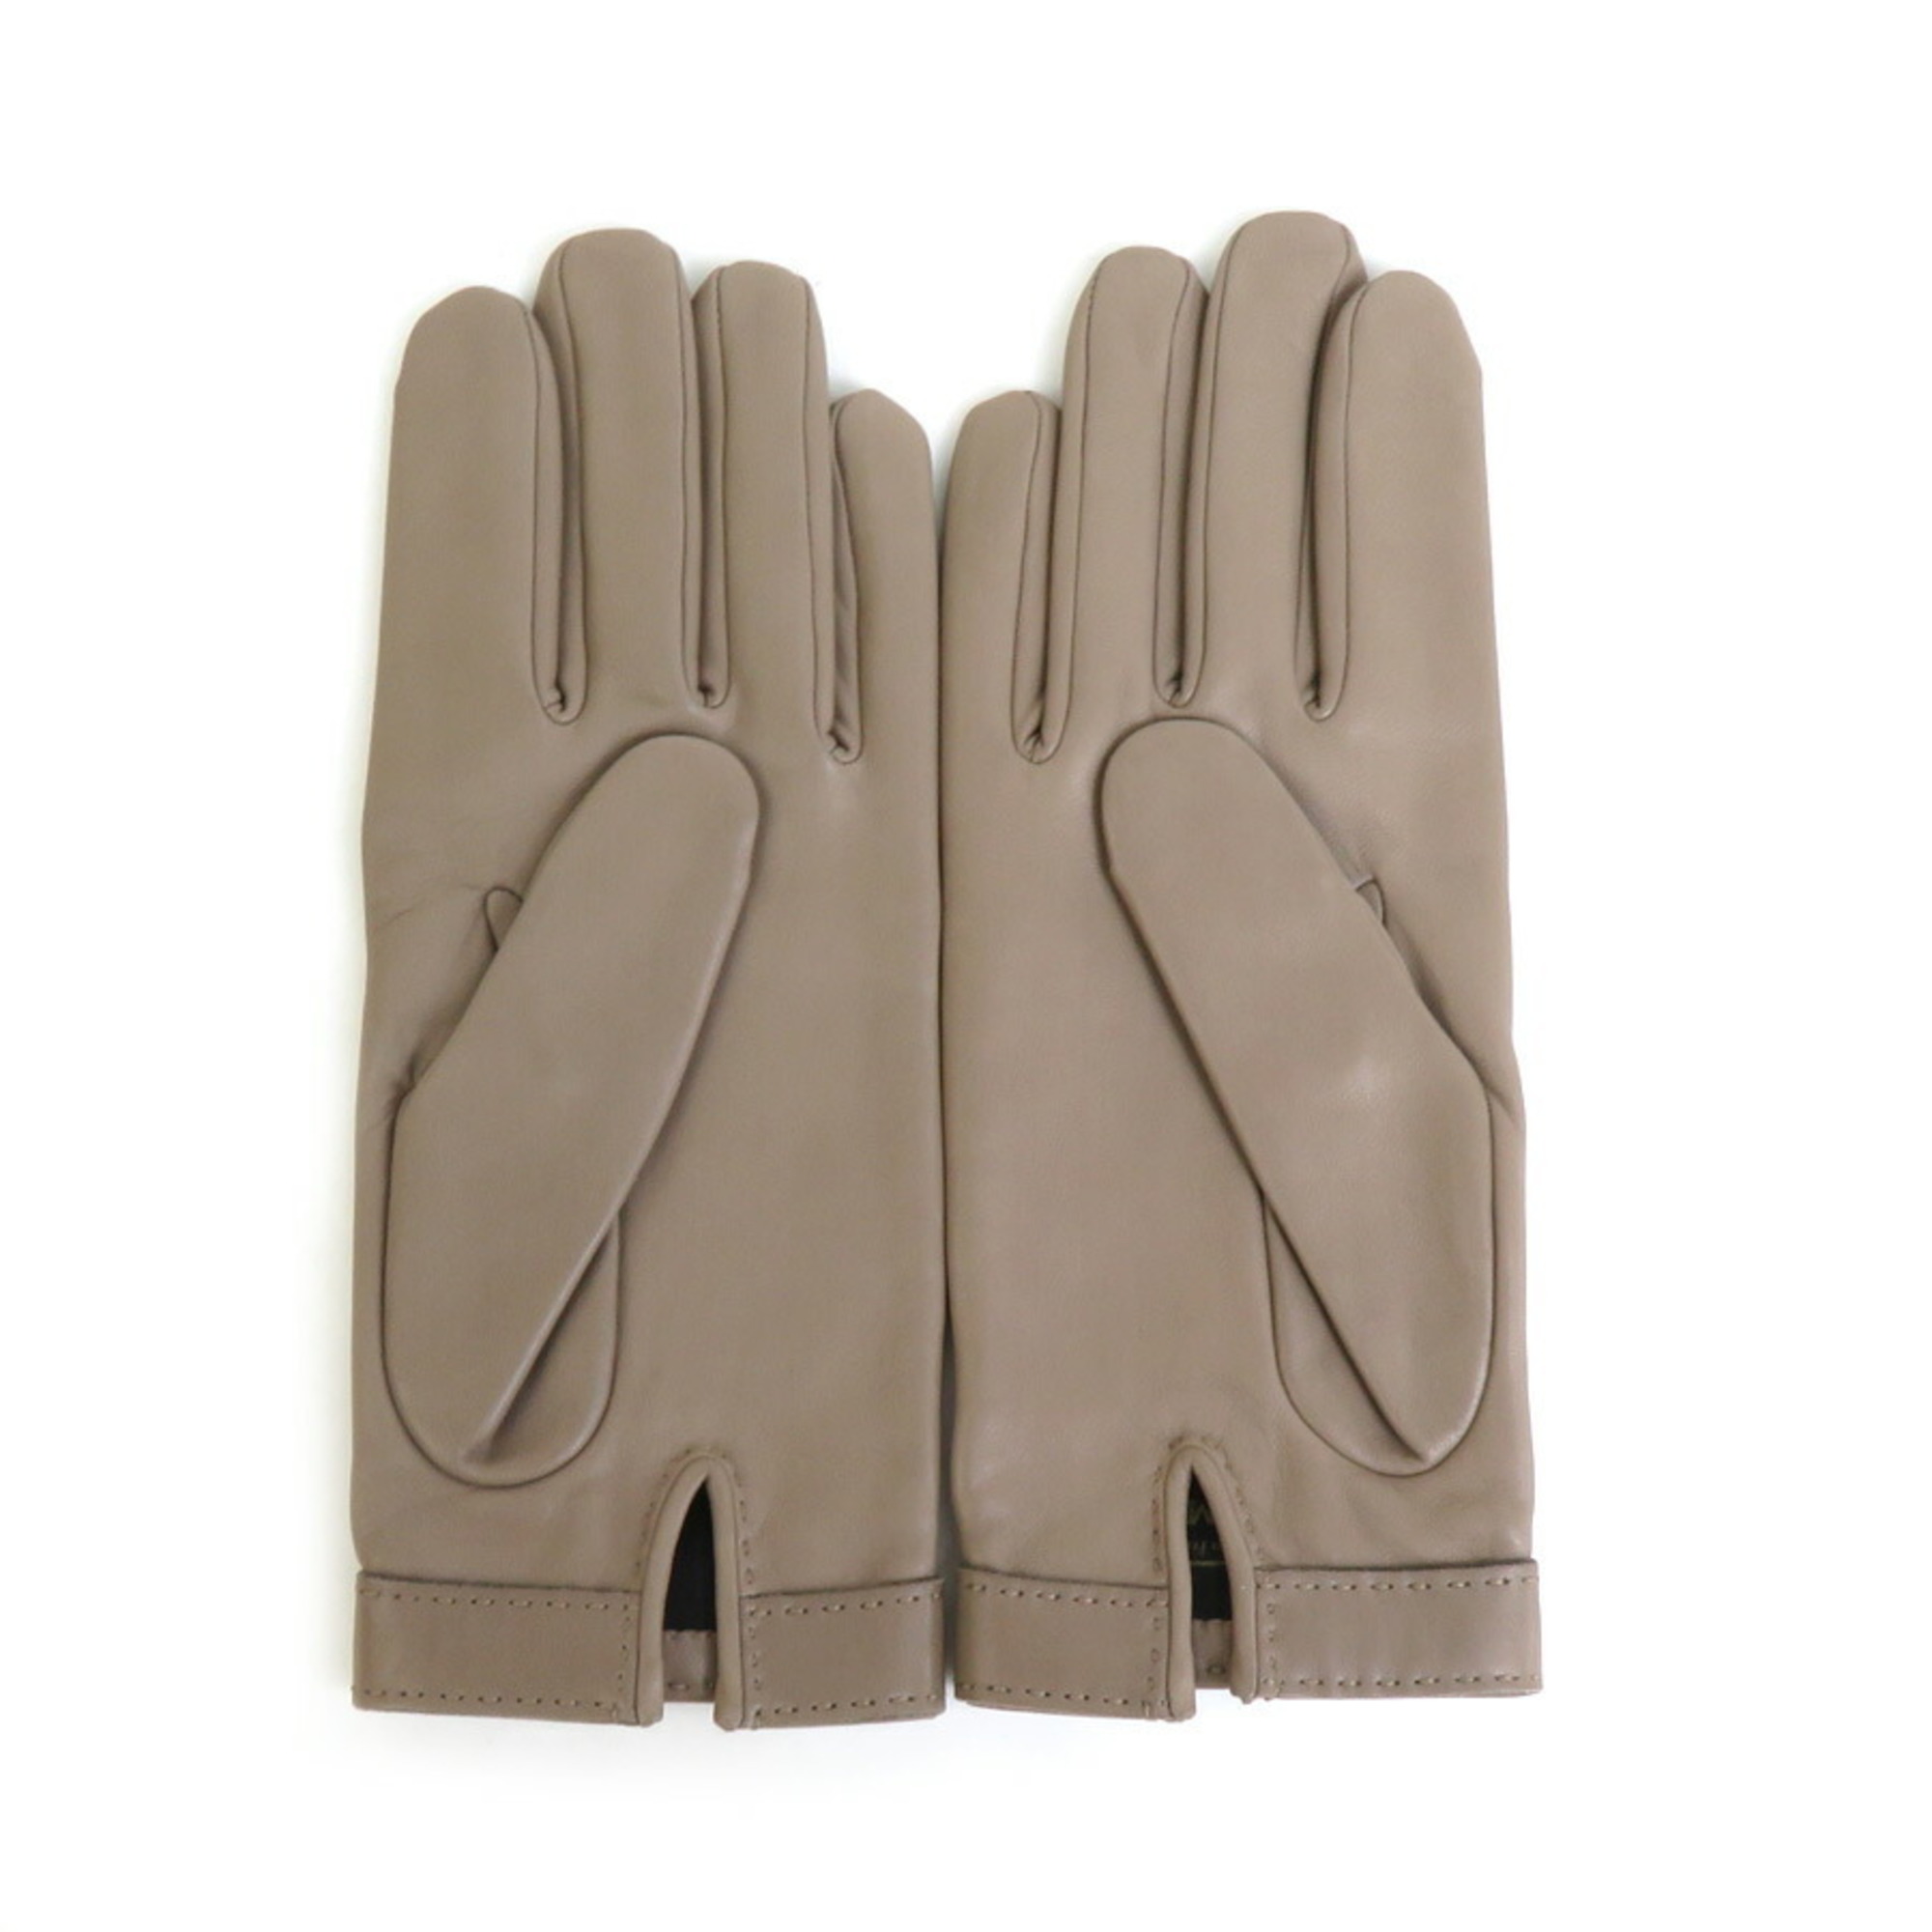 HERMES Gloves Leather/Metal Greige/Silver Ladies